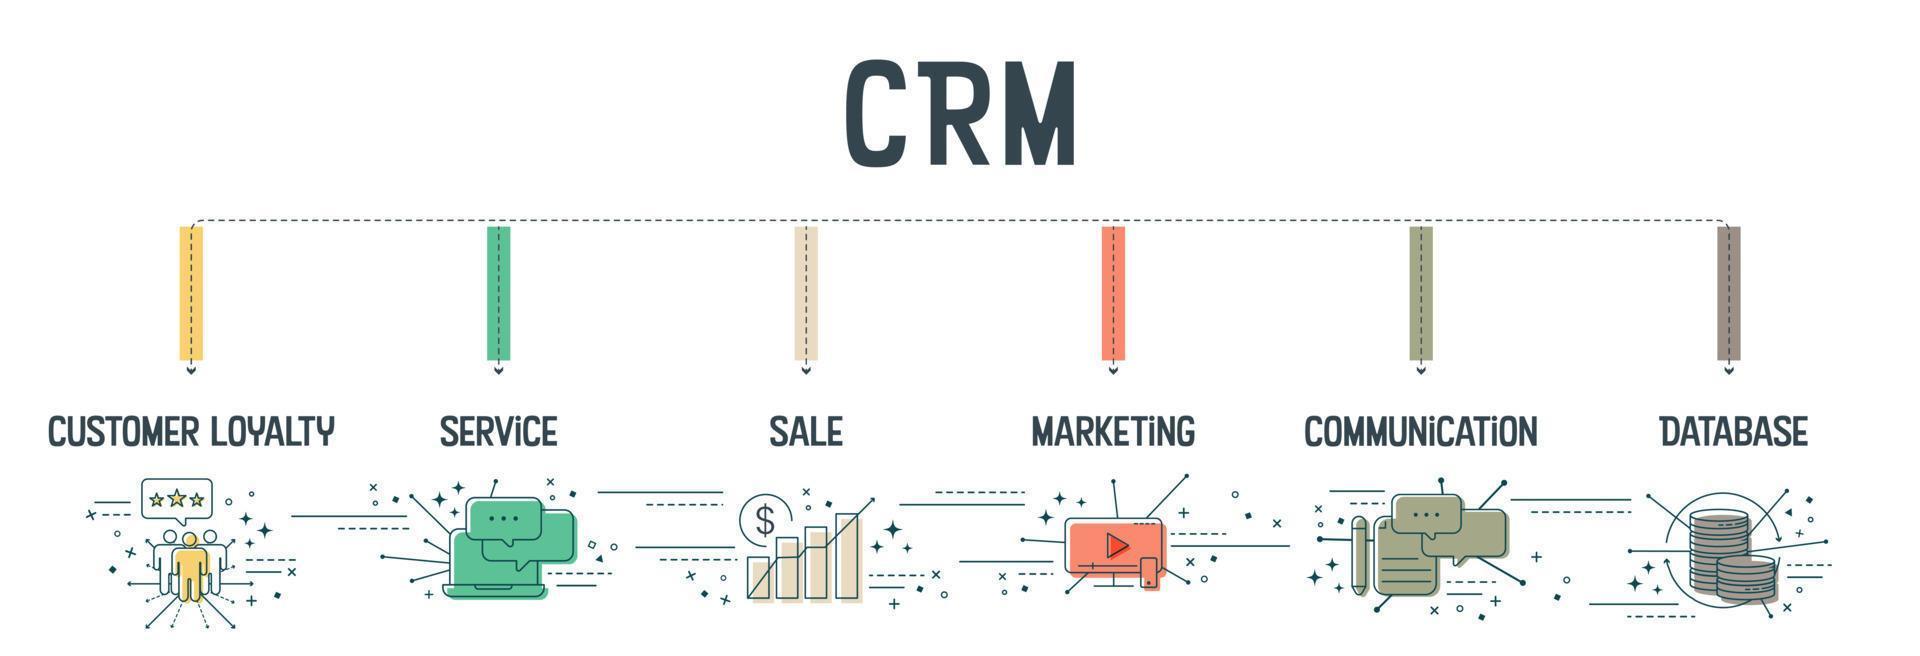 El concepto de banner de gestión de relaciones con clientes o CRM tiene 6 pasos para analizar, como la lealtad del cliente, el servicio, la venta, el marketing, la comunicación y la base de datos. vector de iconos de banner.